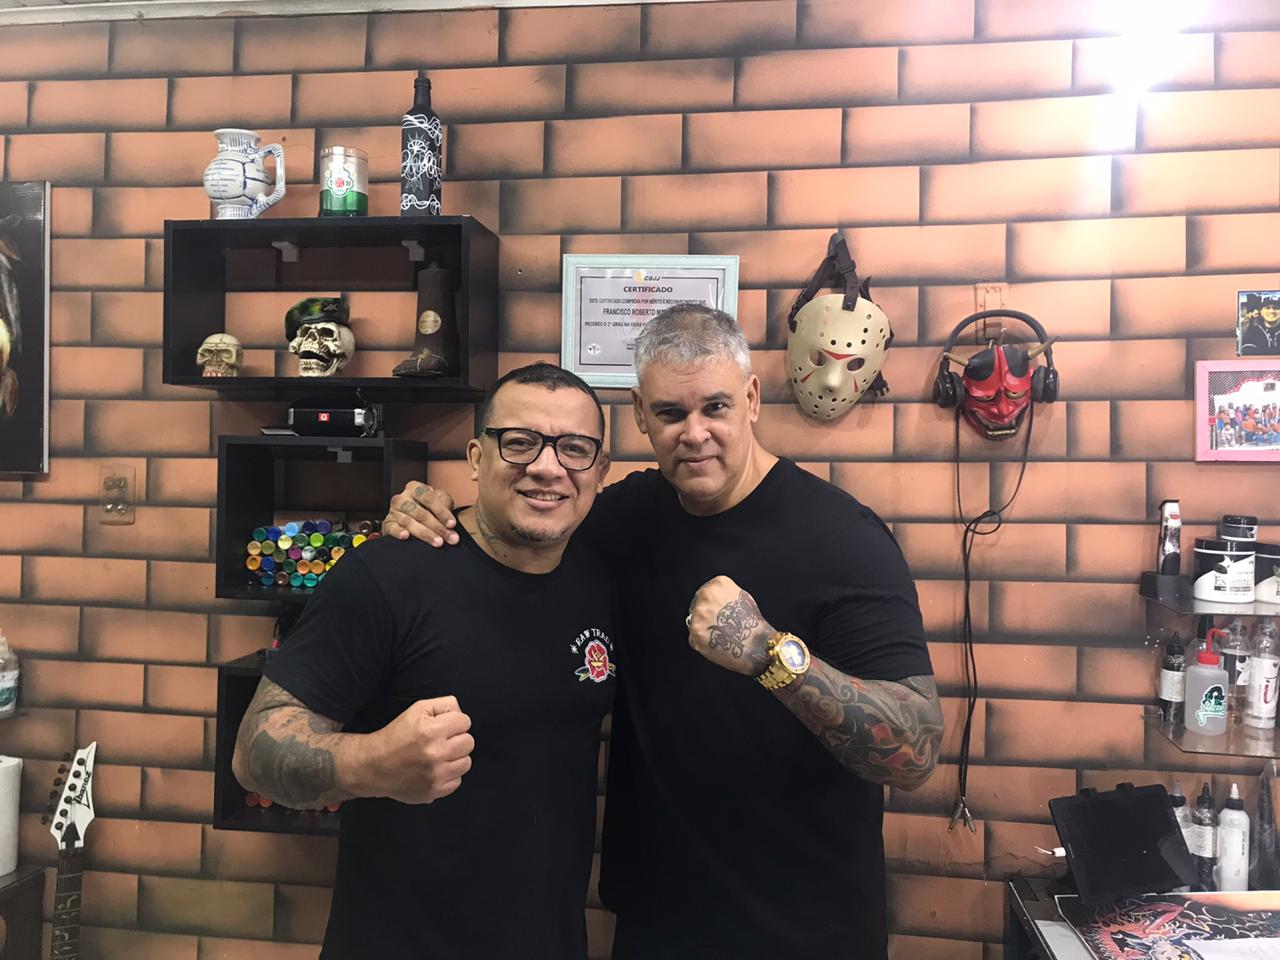 MMA, Muay Thai, tatuagens e mais: confira a programação completa do Iron Man na Arnold Classic 2020, em São Paulo